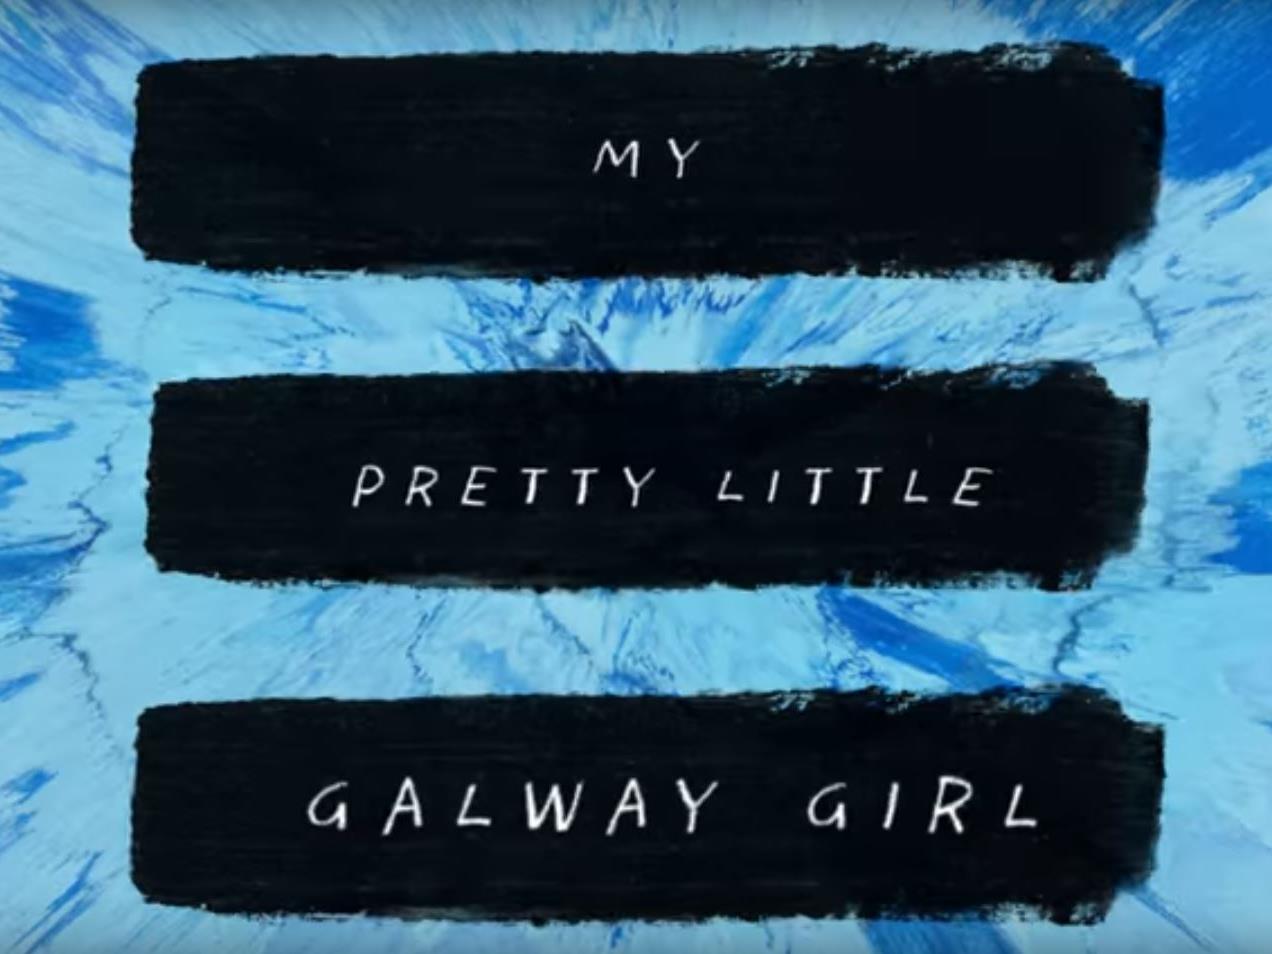 Ed Sheeran landet mit "Galway Girl" einen weiteren Hit.